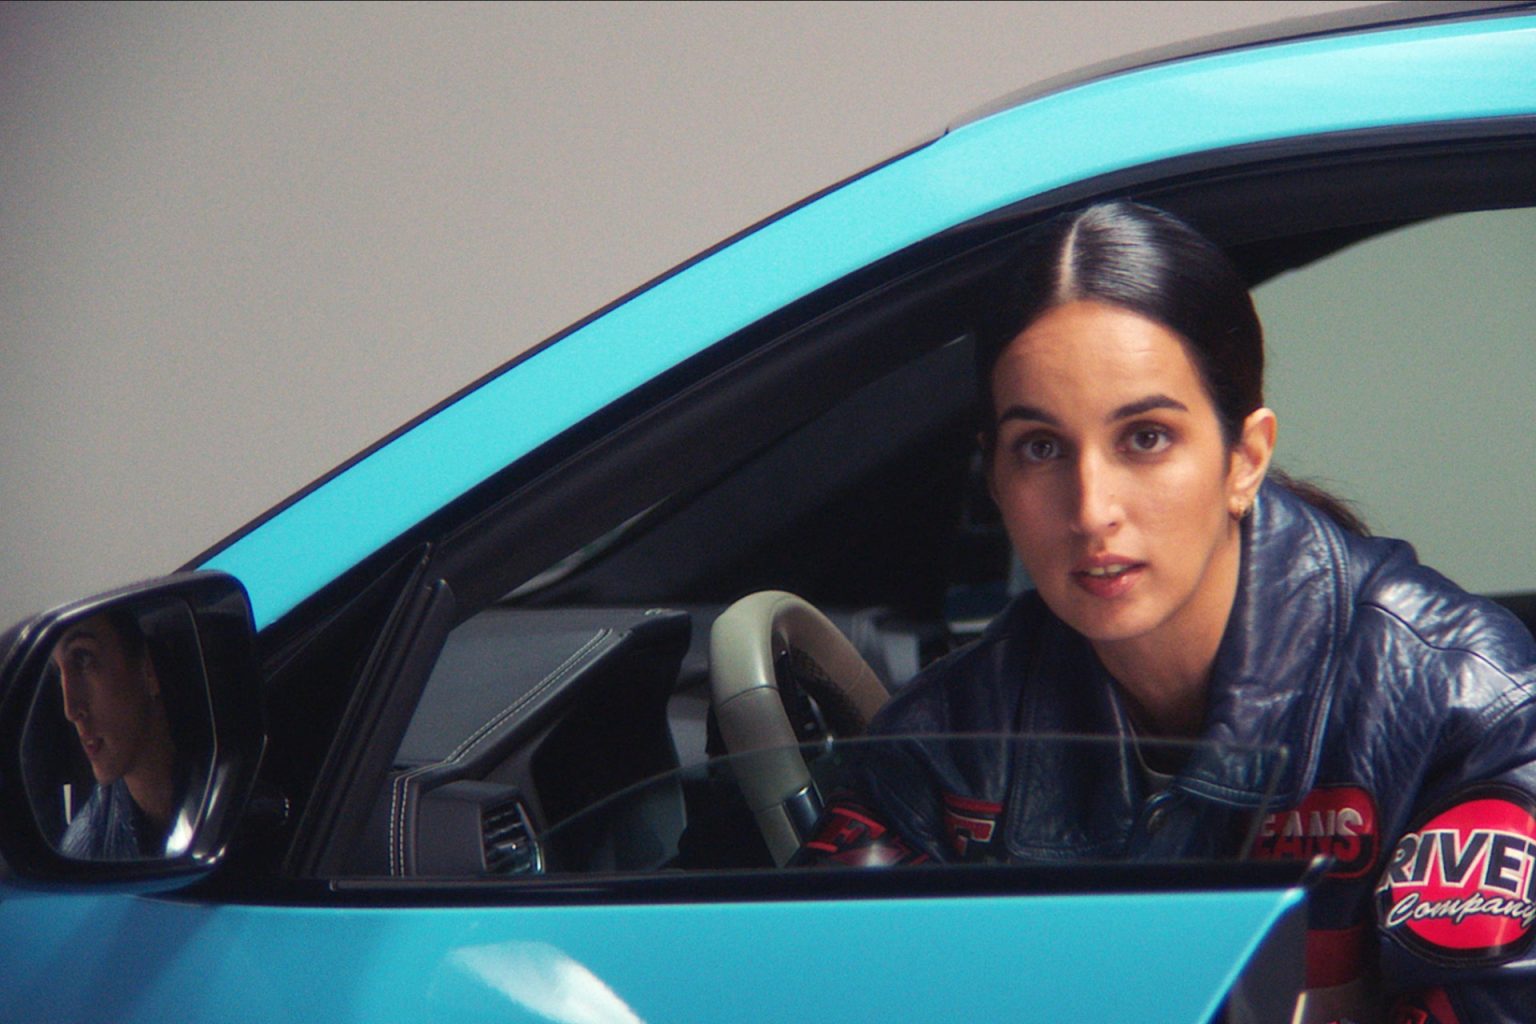 Auf dem Bild das geöffnete Fahrerinnensitzfenster eines hellblauen Autos zu sehen. Am Steuer sitzt die Rapperin Ebow und schaut aus dem Fenster in die Kamera. Sie trägt eine schwarze Lederjacke mit rotem Schriftzug und ihr glänzendes schwarzes Haar ist gescheitelt und zusammengebunden. Im Rückspiegel des Autos ist ihr Gesicht reflektiert.